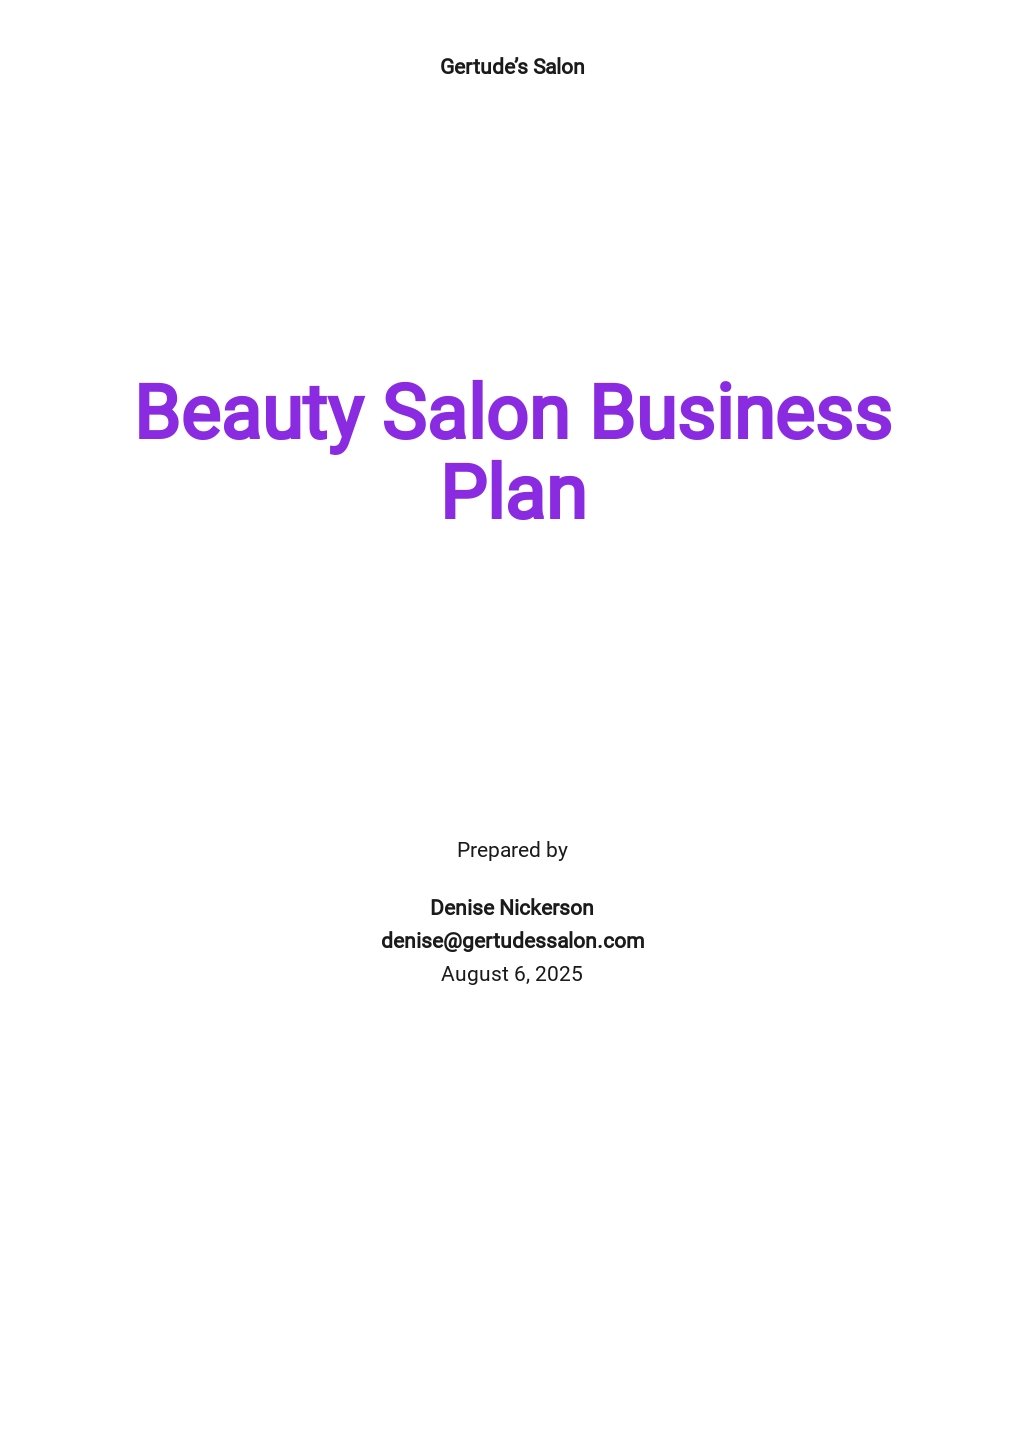 penny's hair salon business plan pdf